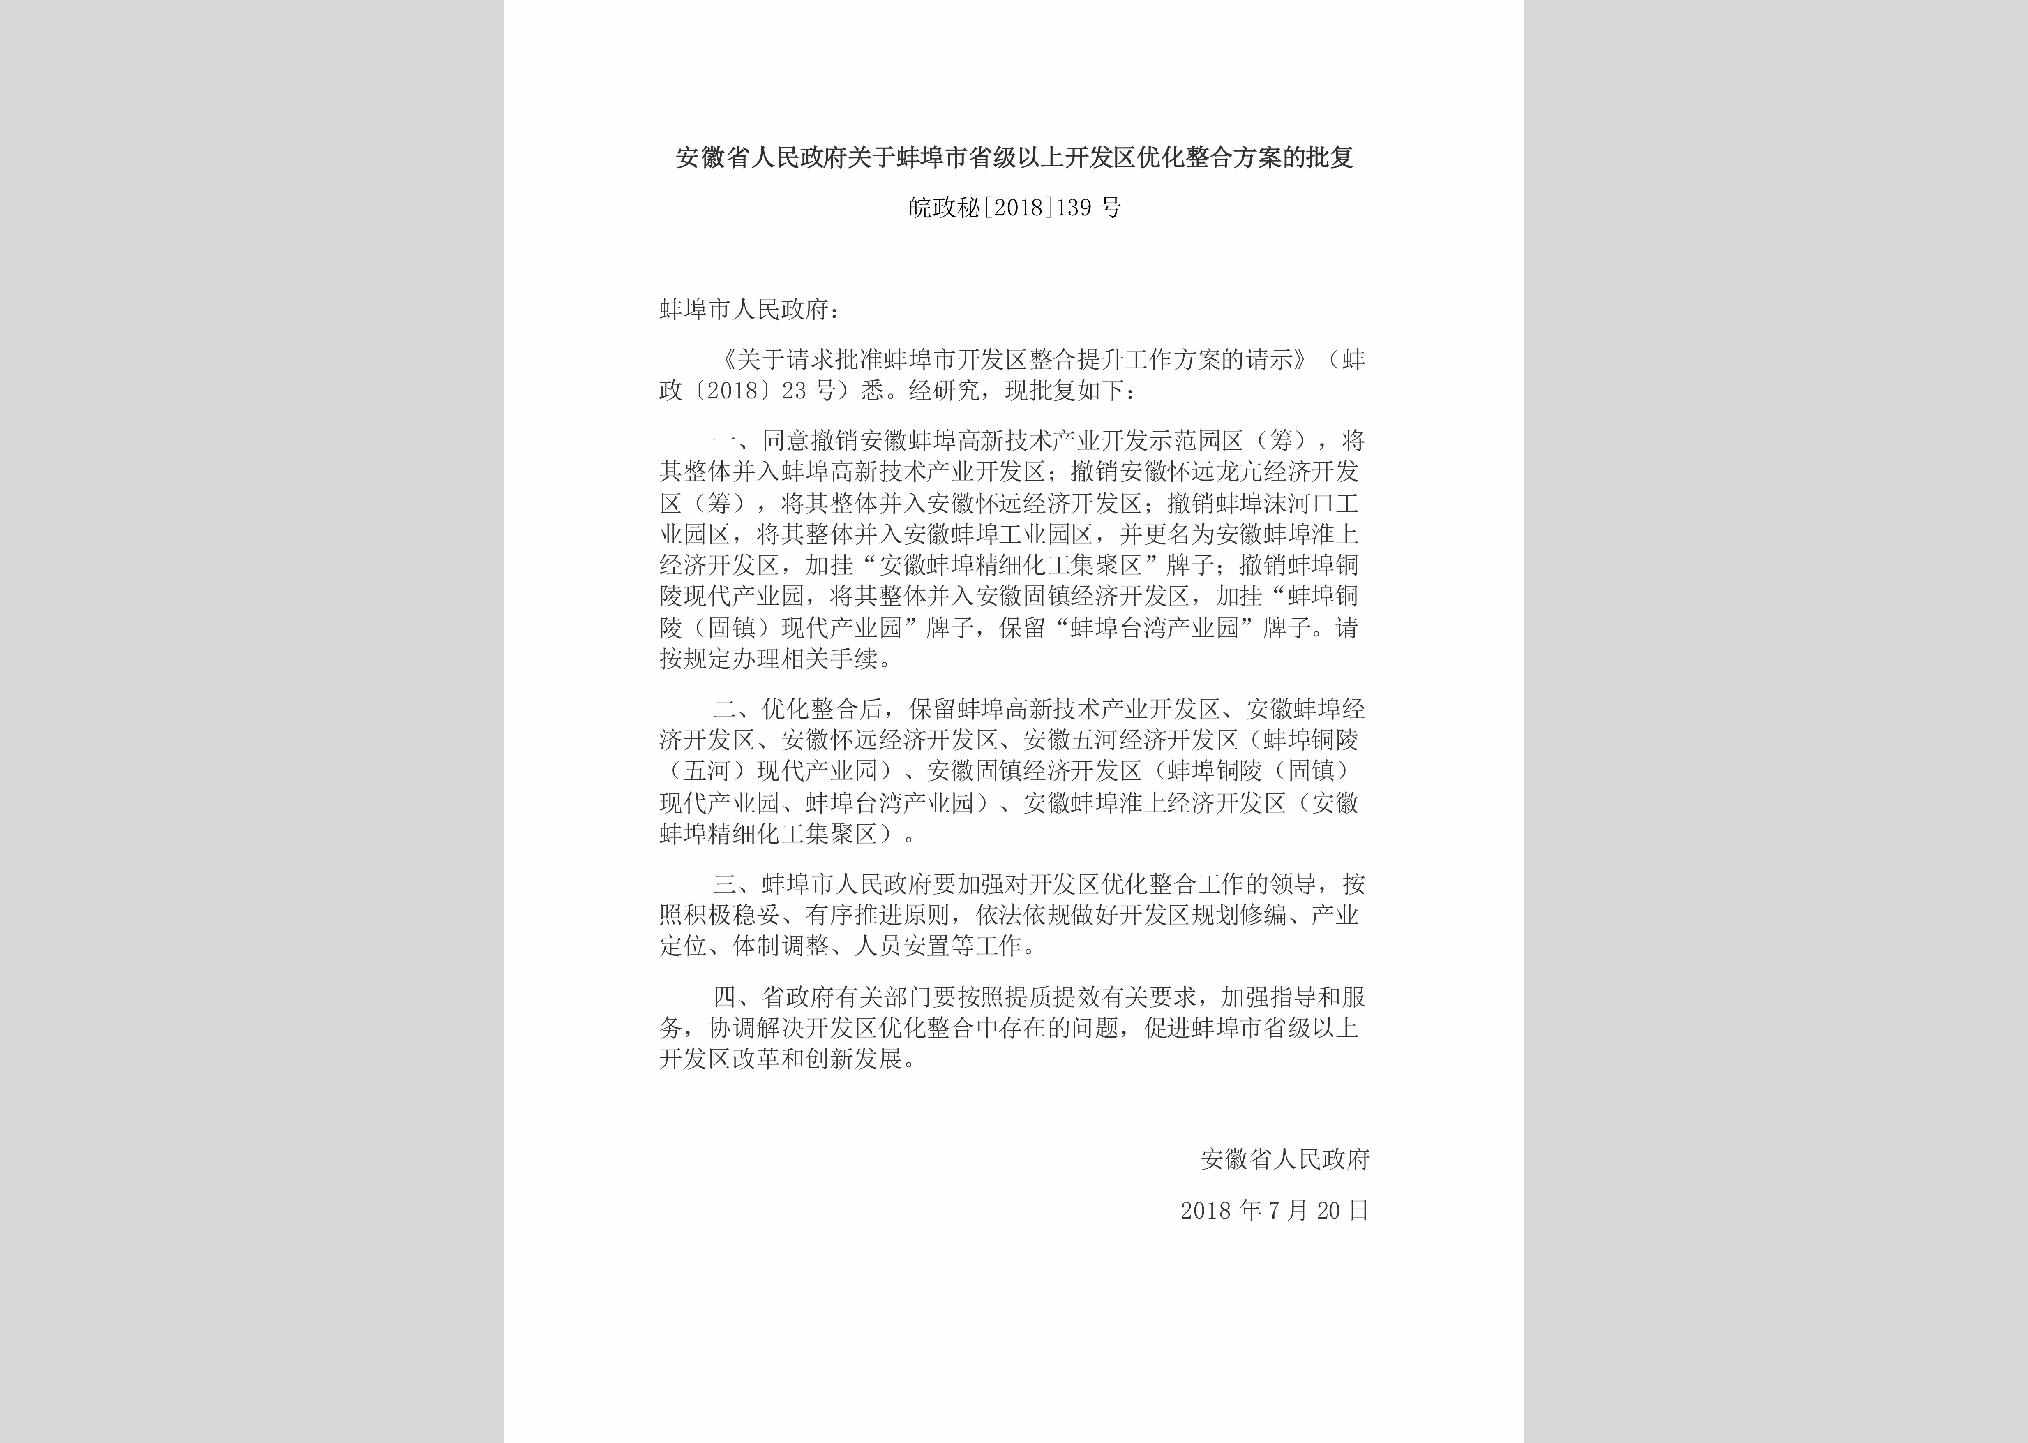 皖政秘[2018]139号：安徽省人民政府关于蚌埠市省级以上开发区优化整合方案的批复